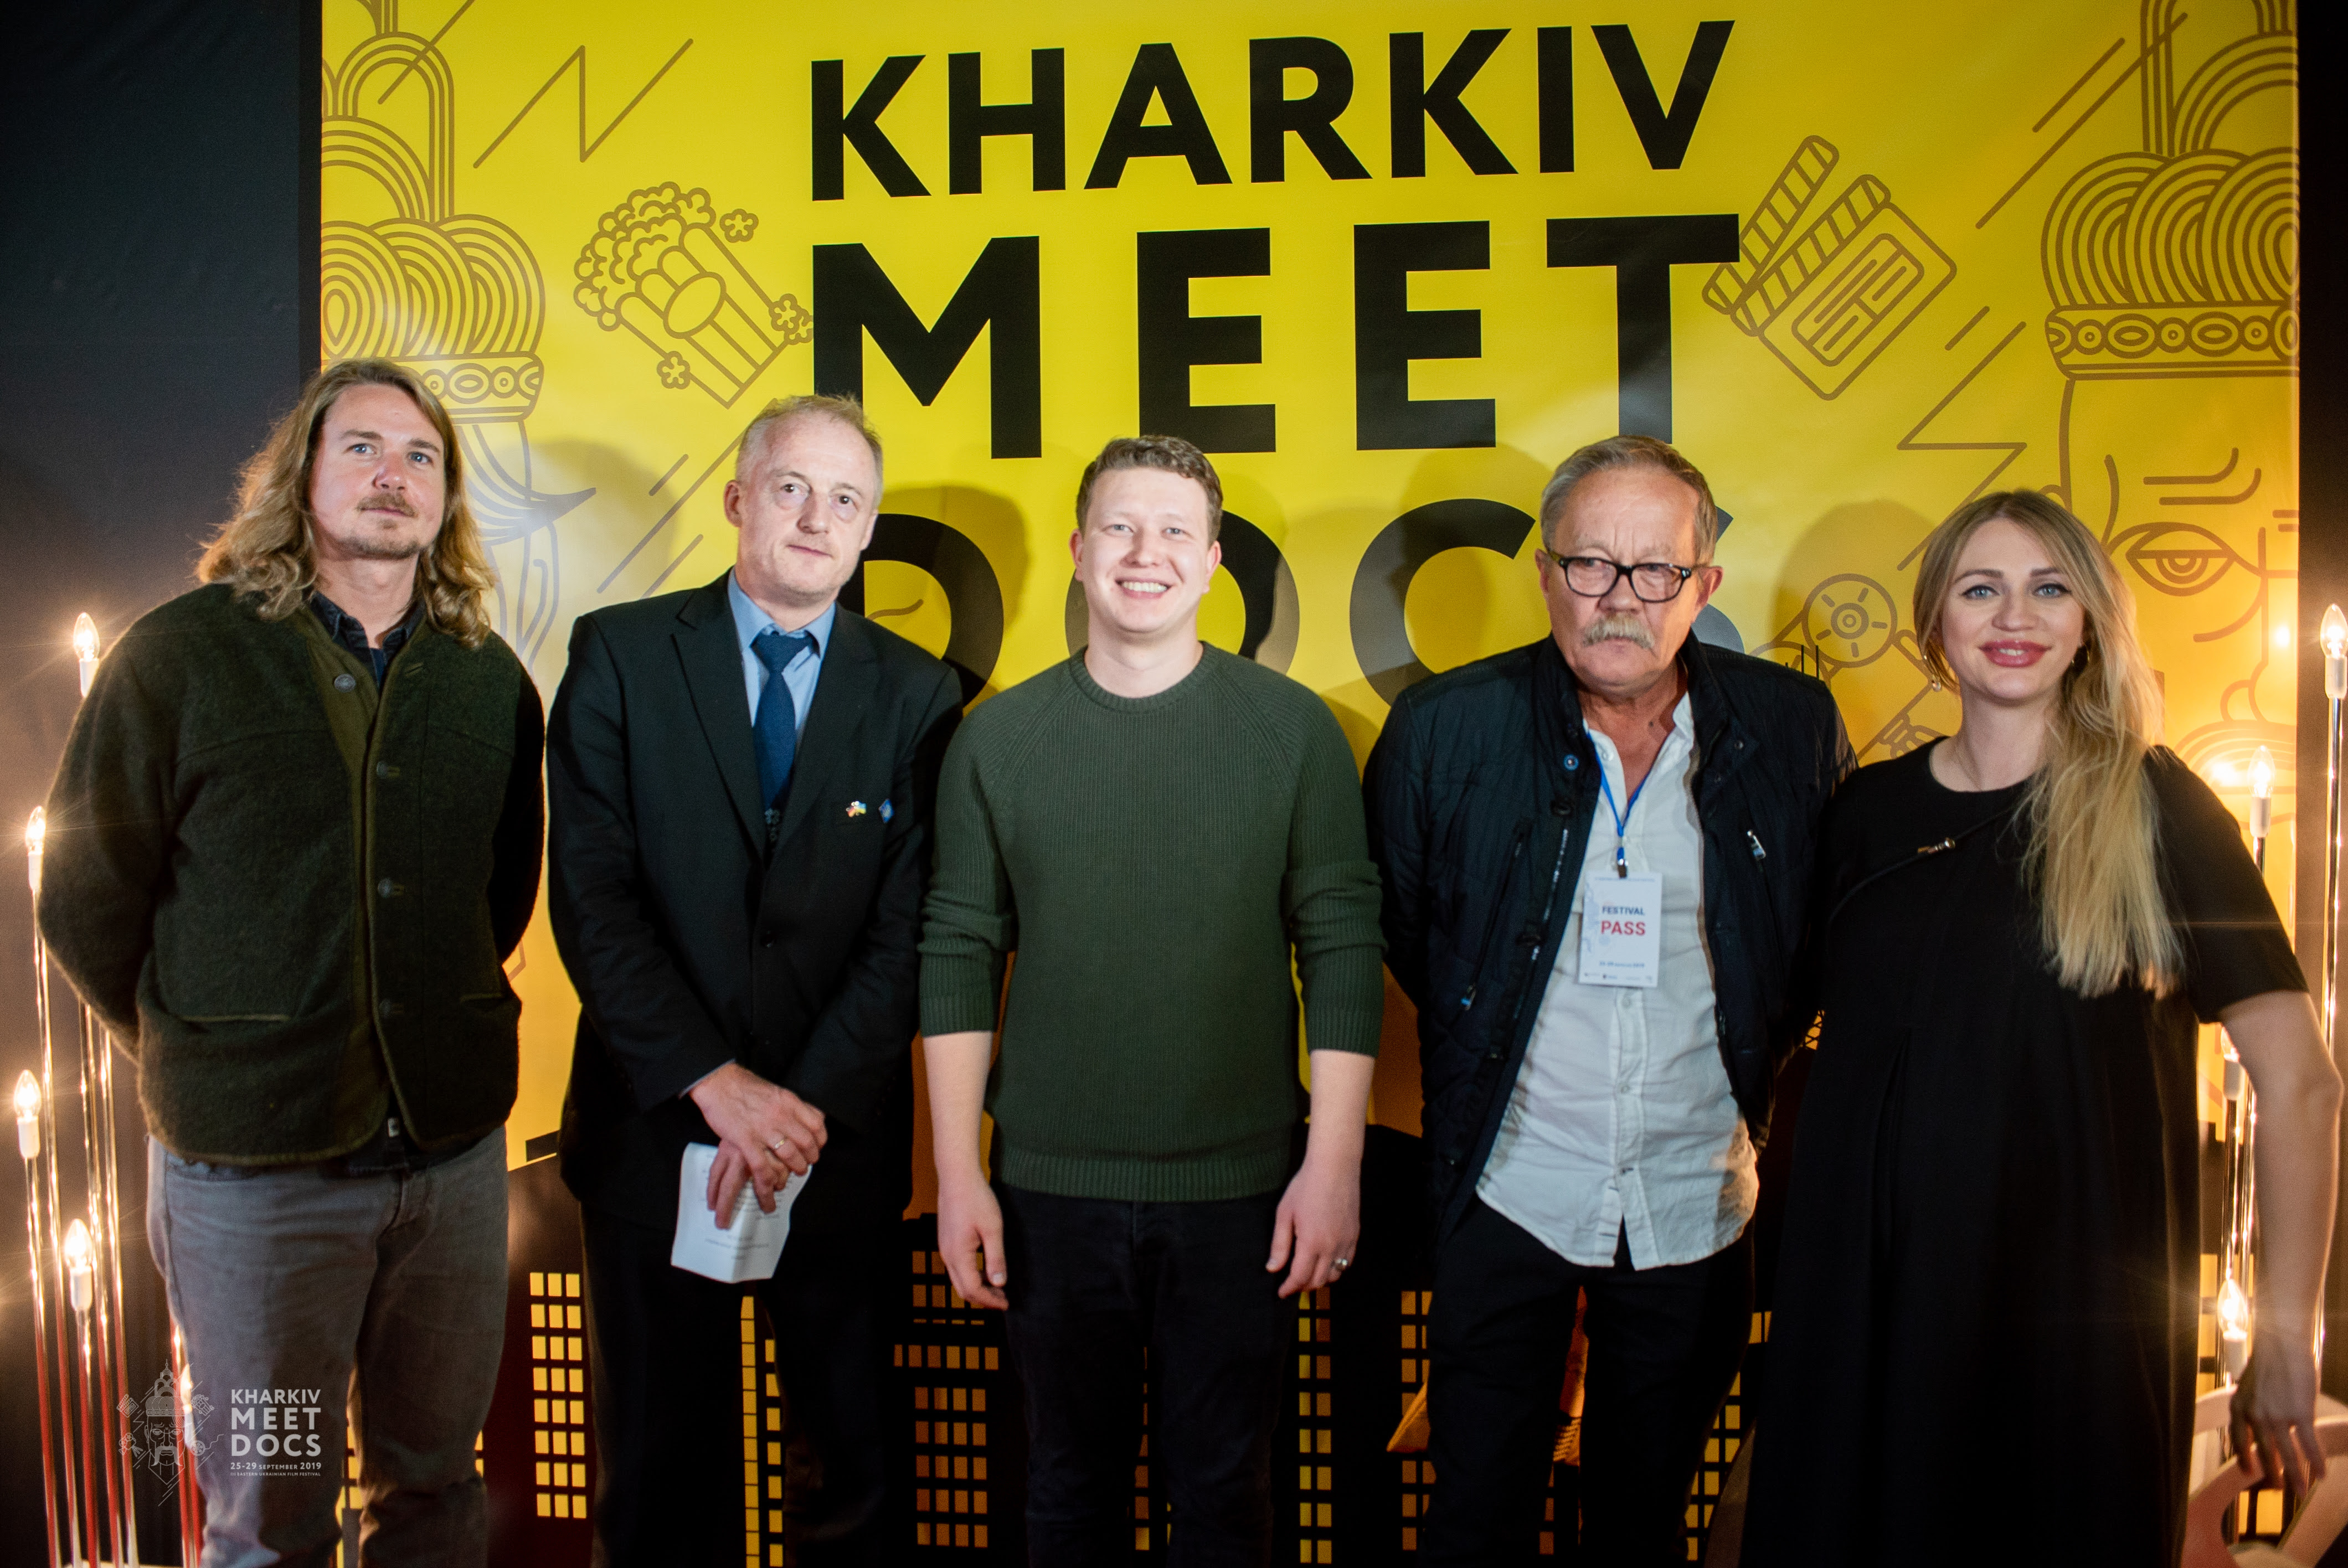 Kharkiv MeetDocs